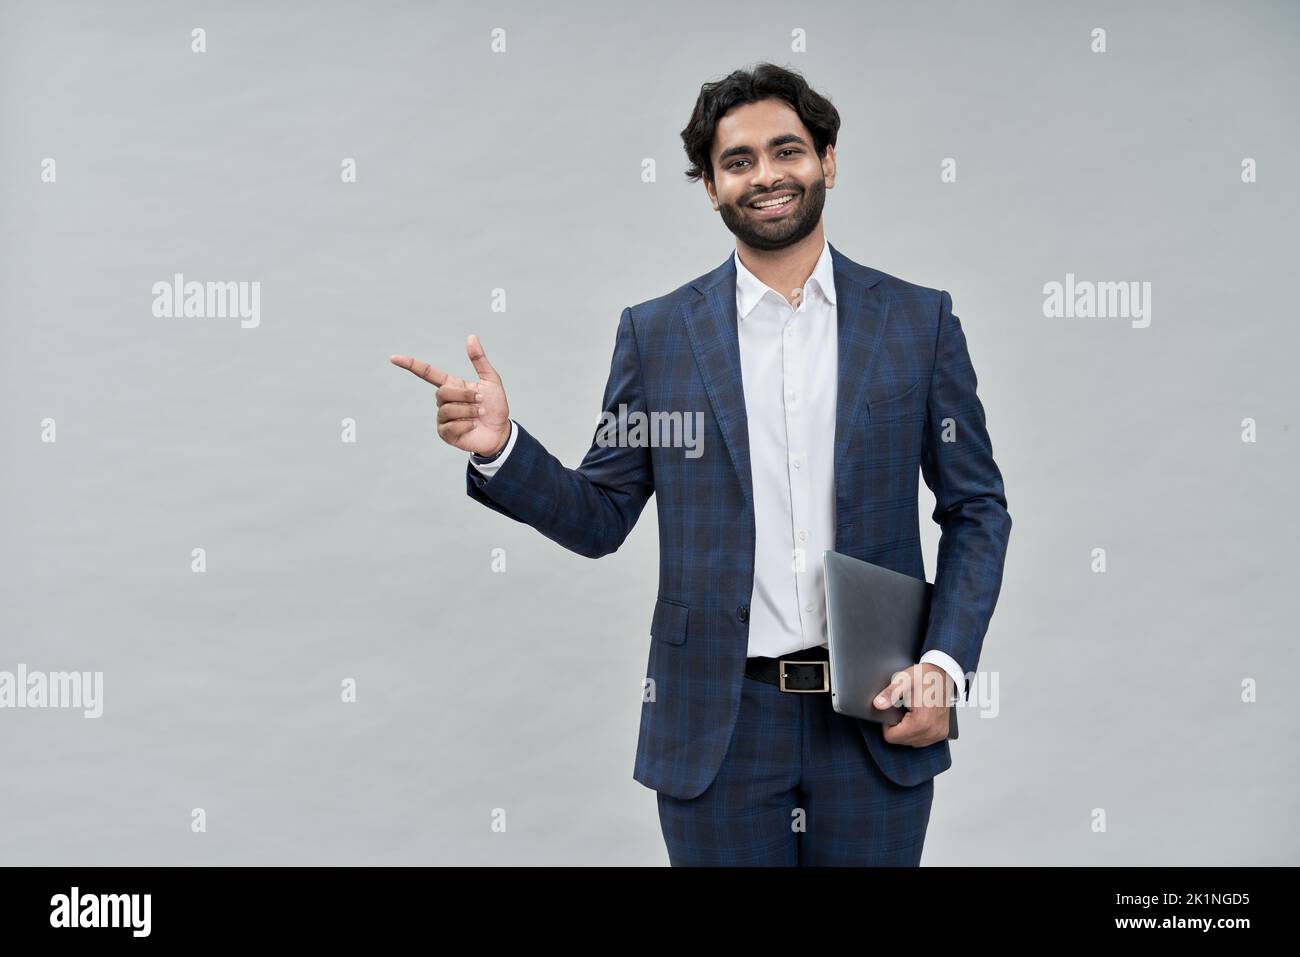 Sonriendo joven indio árabe hombre de negocios con traje apuntando aislado, retrato. Foto de stock